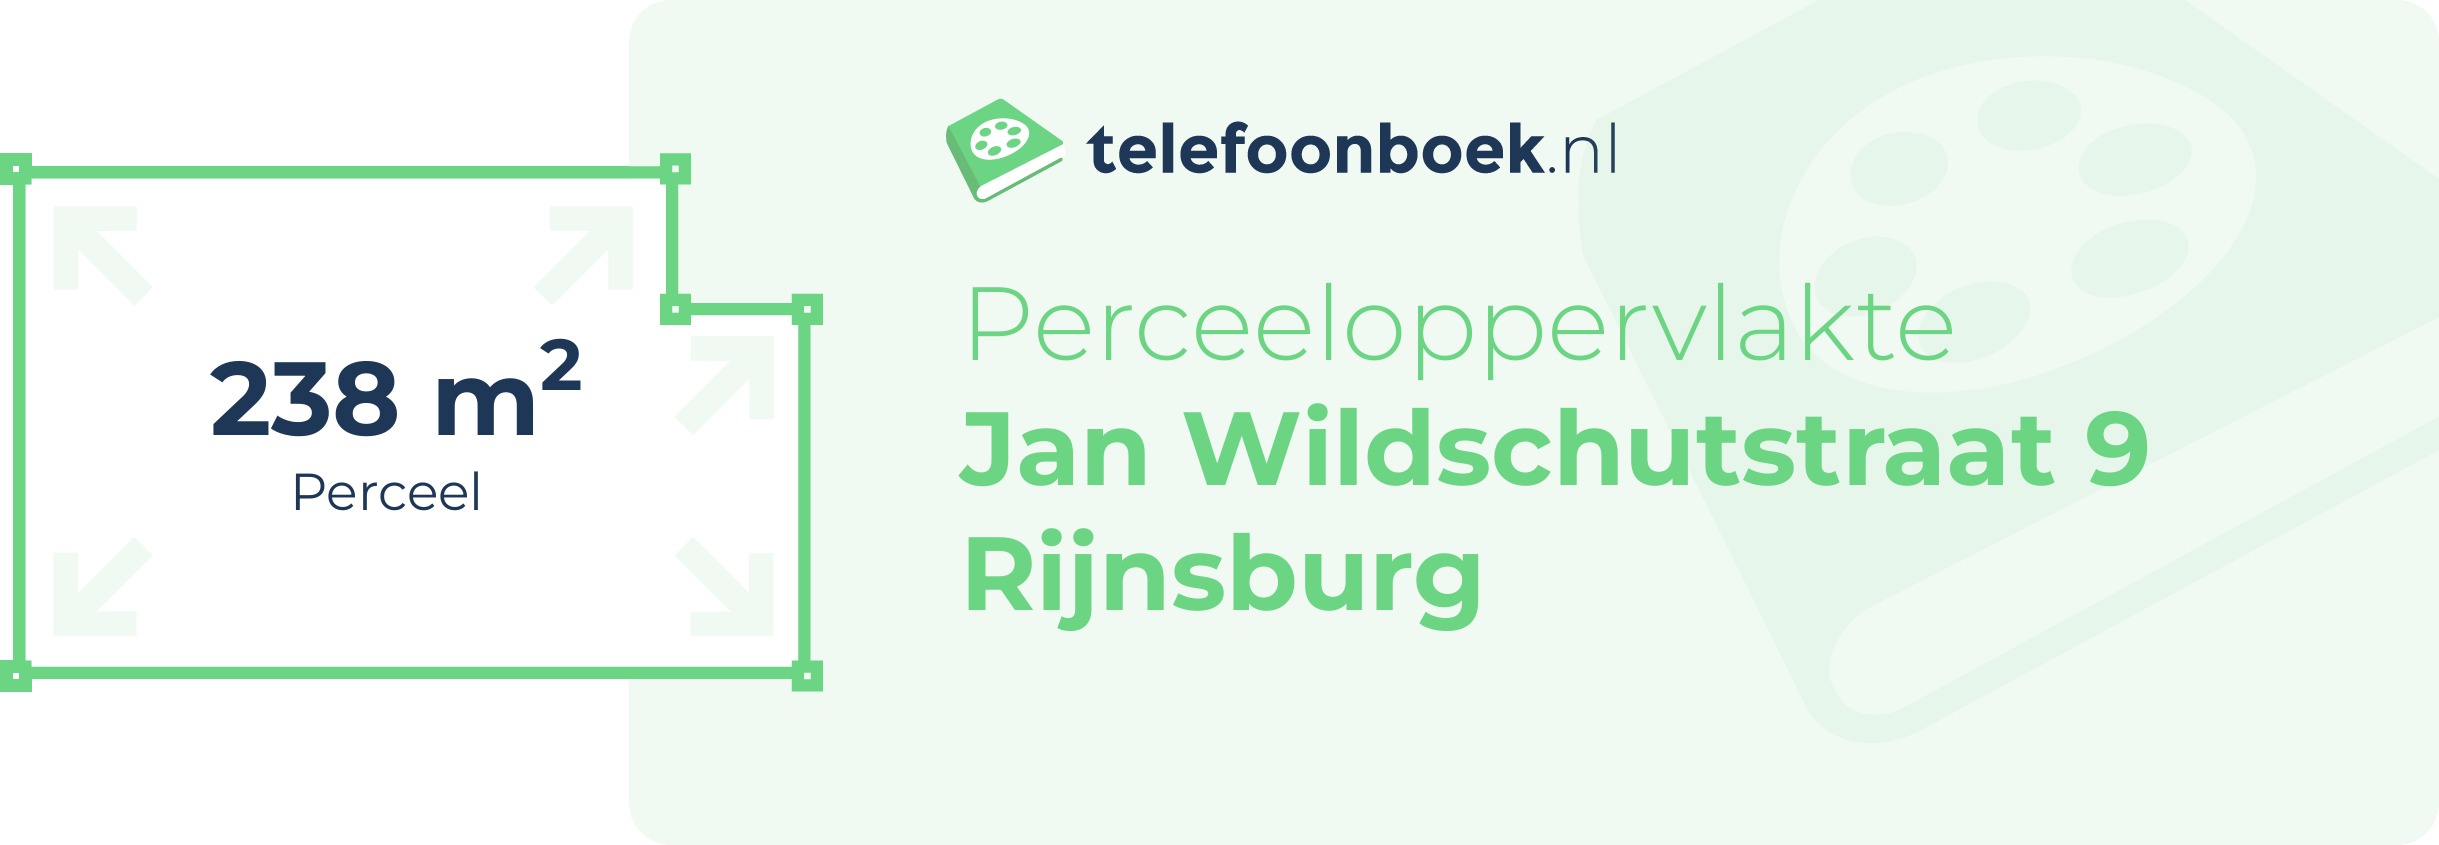 Perceeloppervlakte Jan Wildschutstraat 9 Rijnsburg